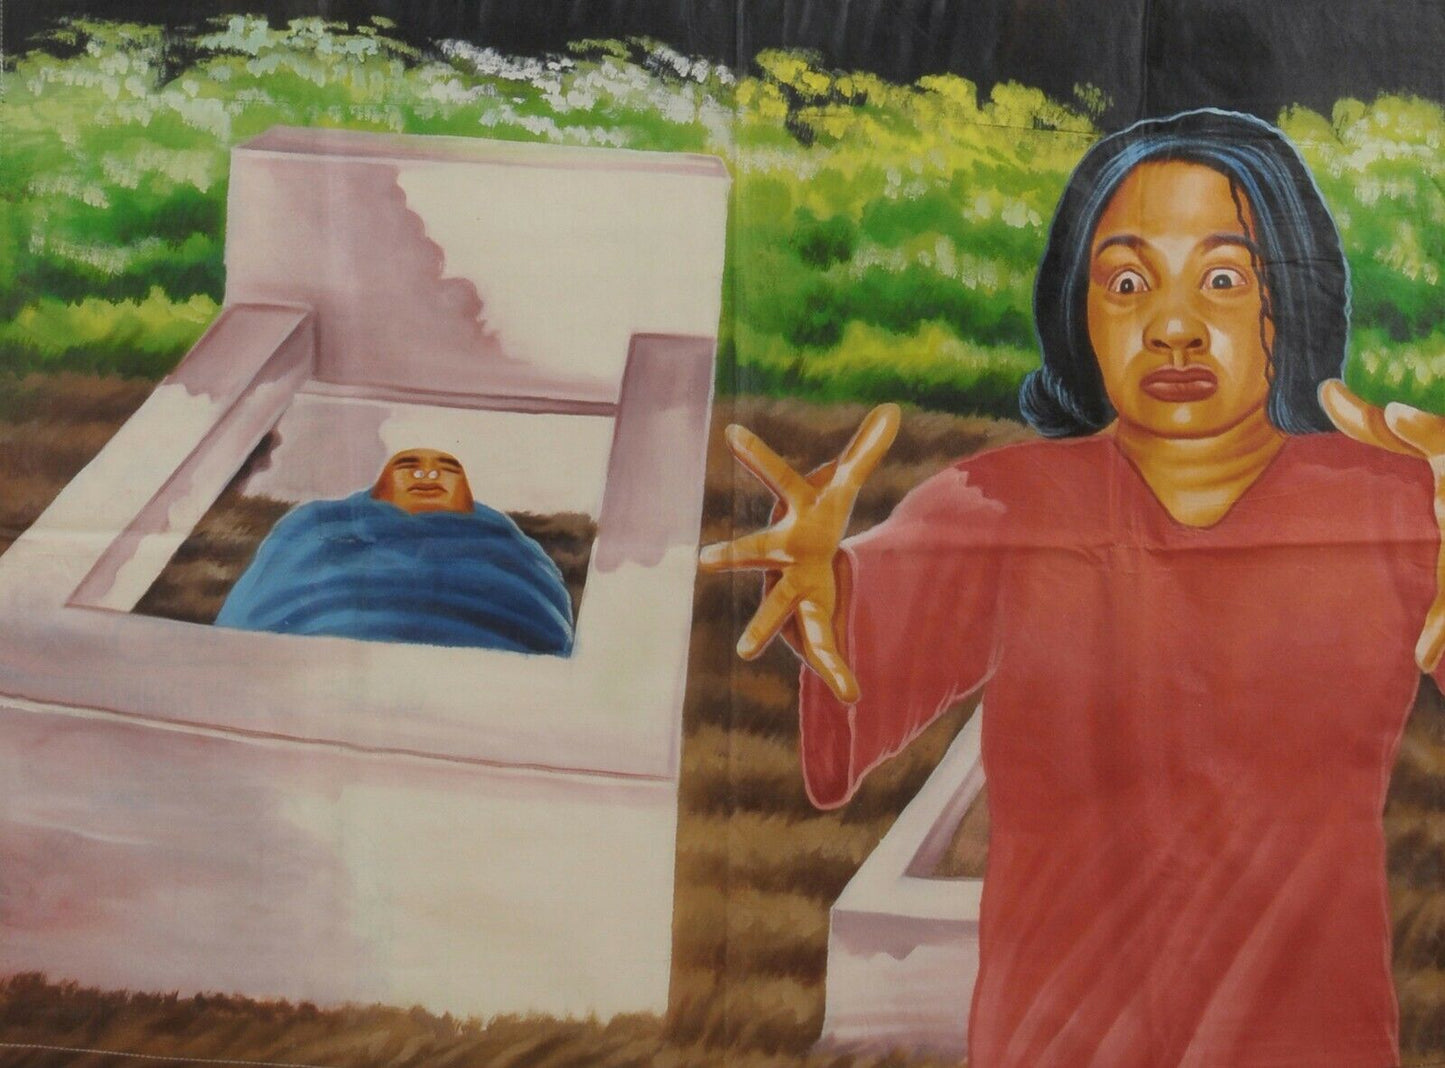 Αφίσα ταινίας Κινηματογράφου Γκάνα Αφρικανική λαδομπογιά Ζωγραφική στο χέρι Juju SIGNS OF END TIME - Tribalgh